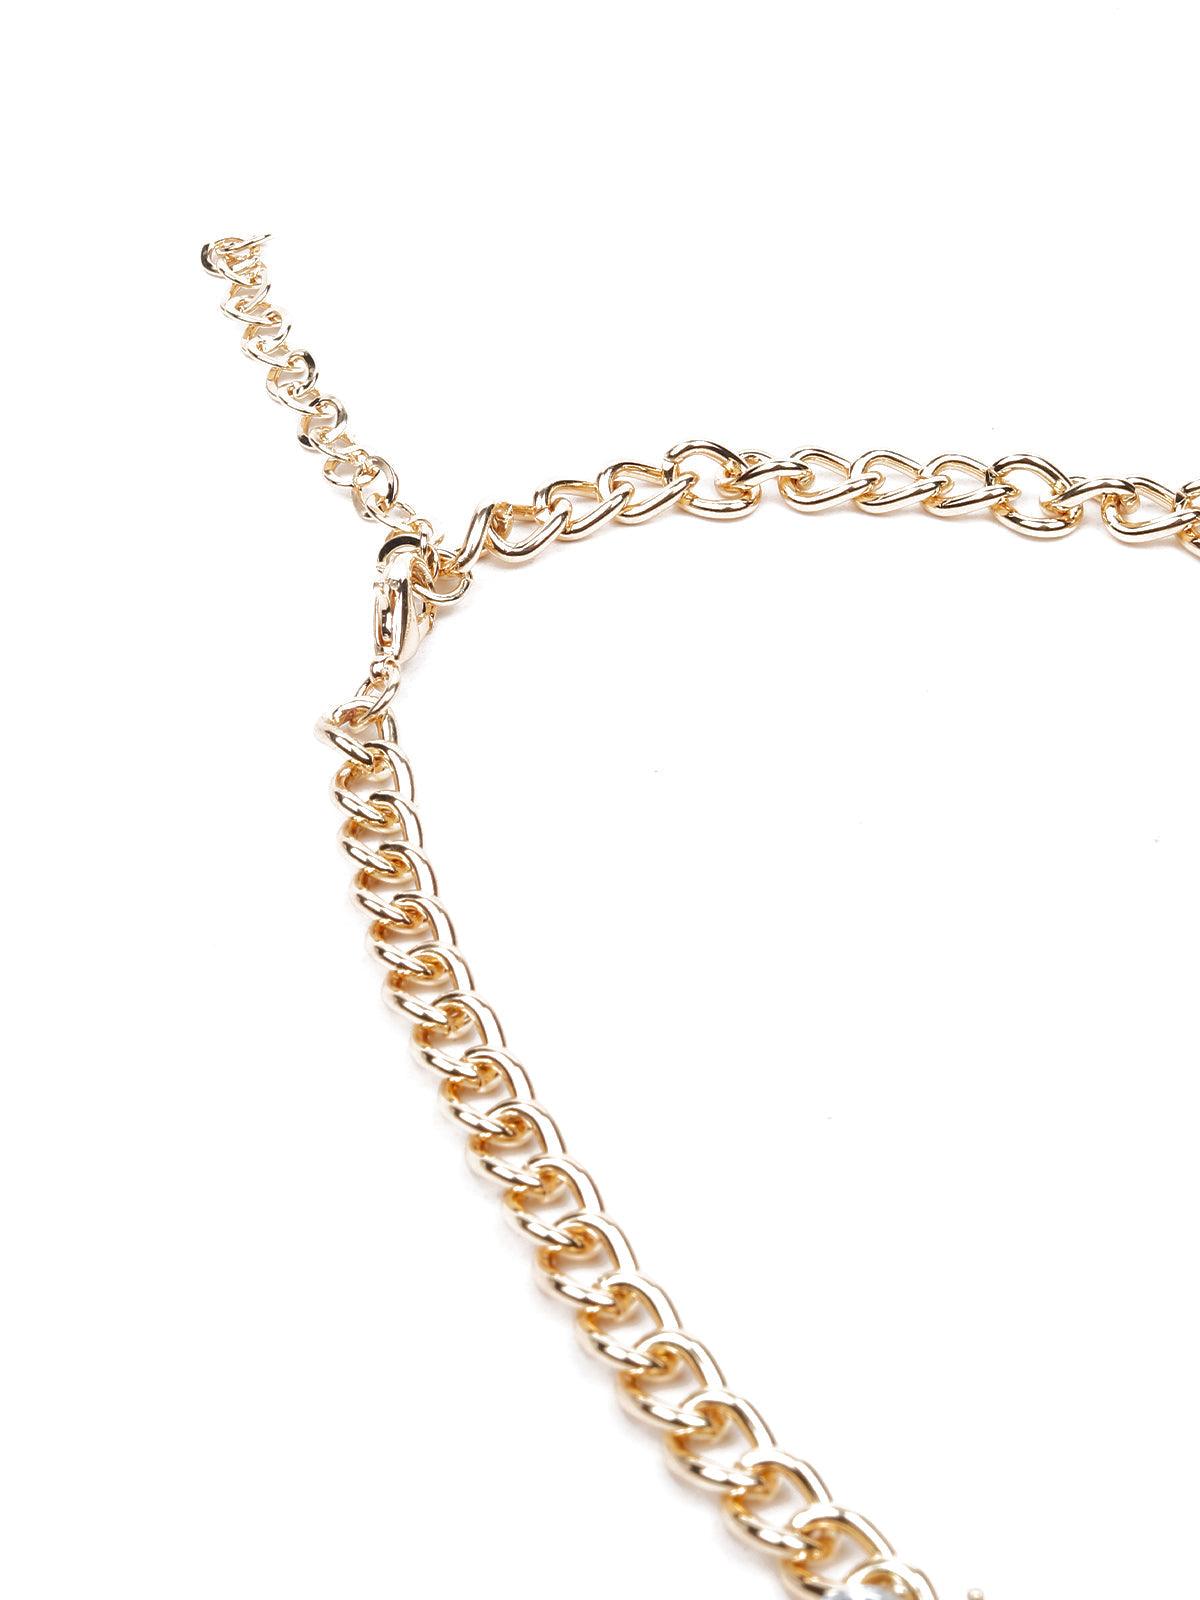 Women's Elegant Gemstone Dropping Crystal Necklace - Odette